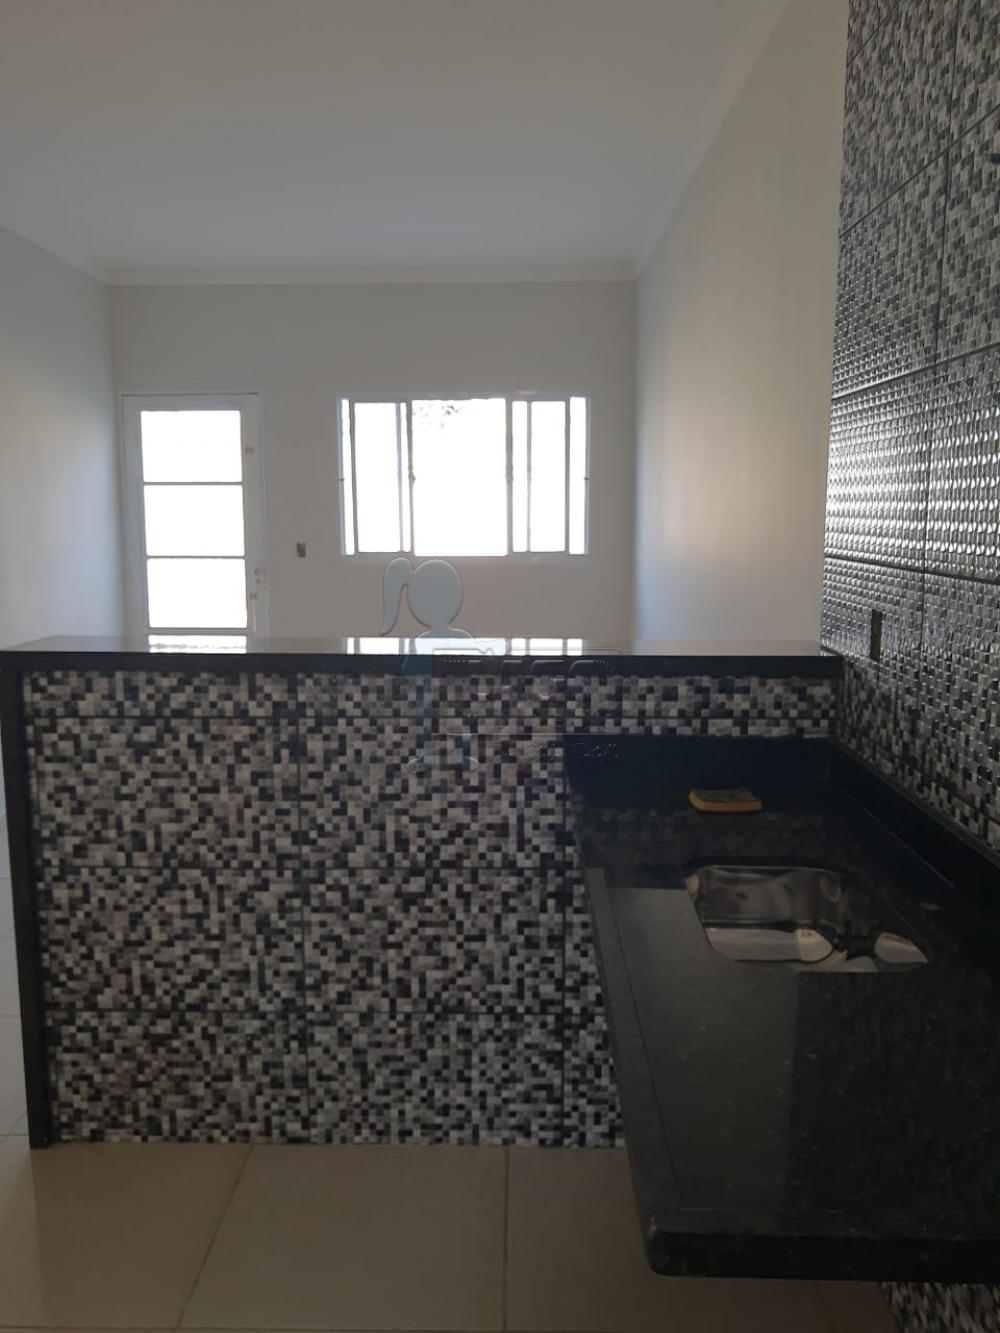 Comprar Casas / Padrão em Ribeirão Preto R$ 280.000,00 - Foto 9